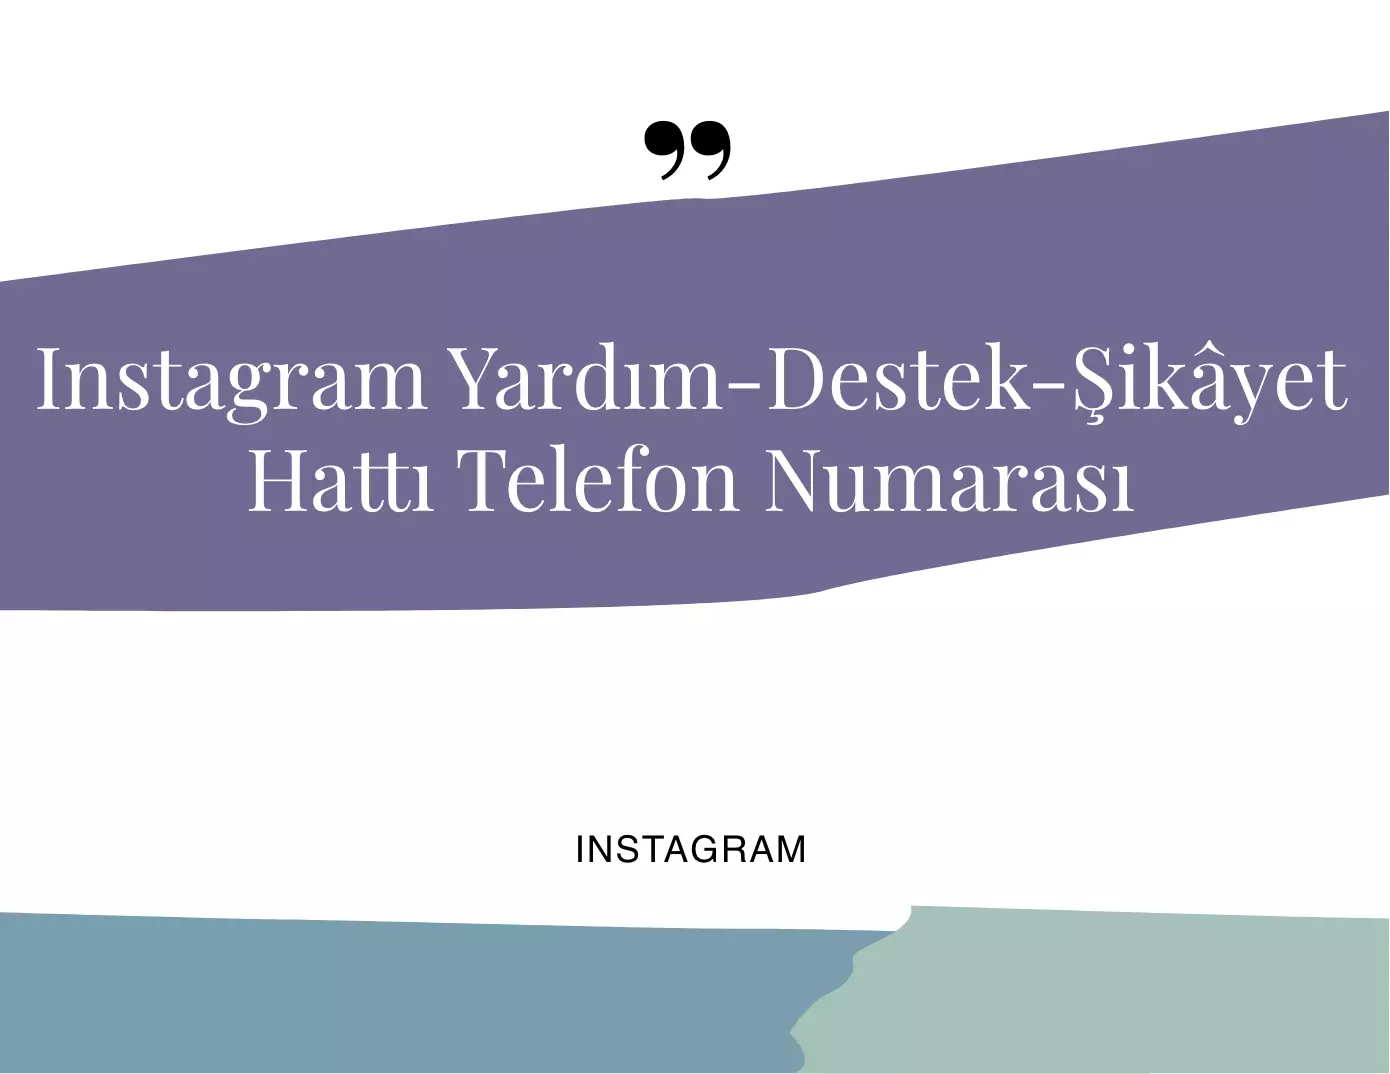 Instagram Destek - Şikayet Hattı Telefon Numarası